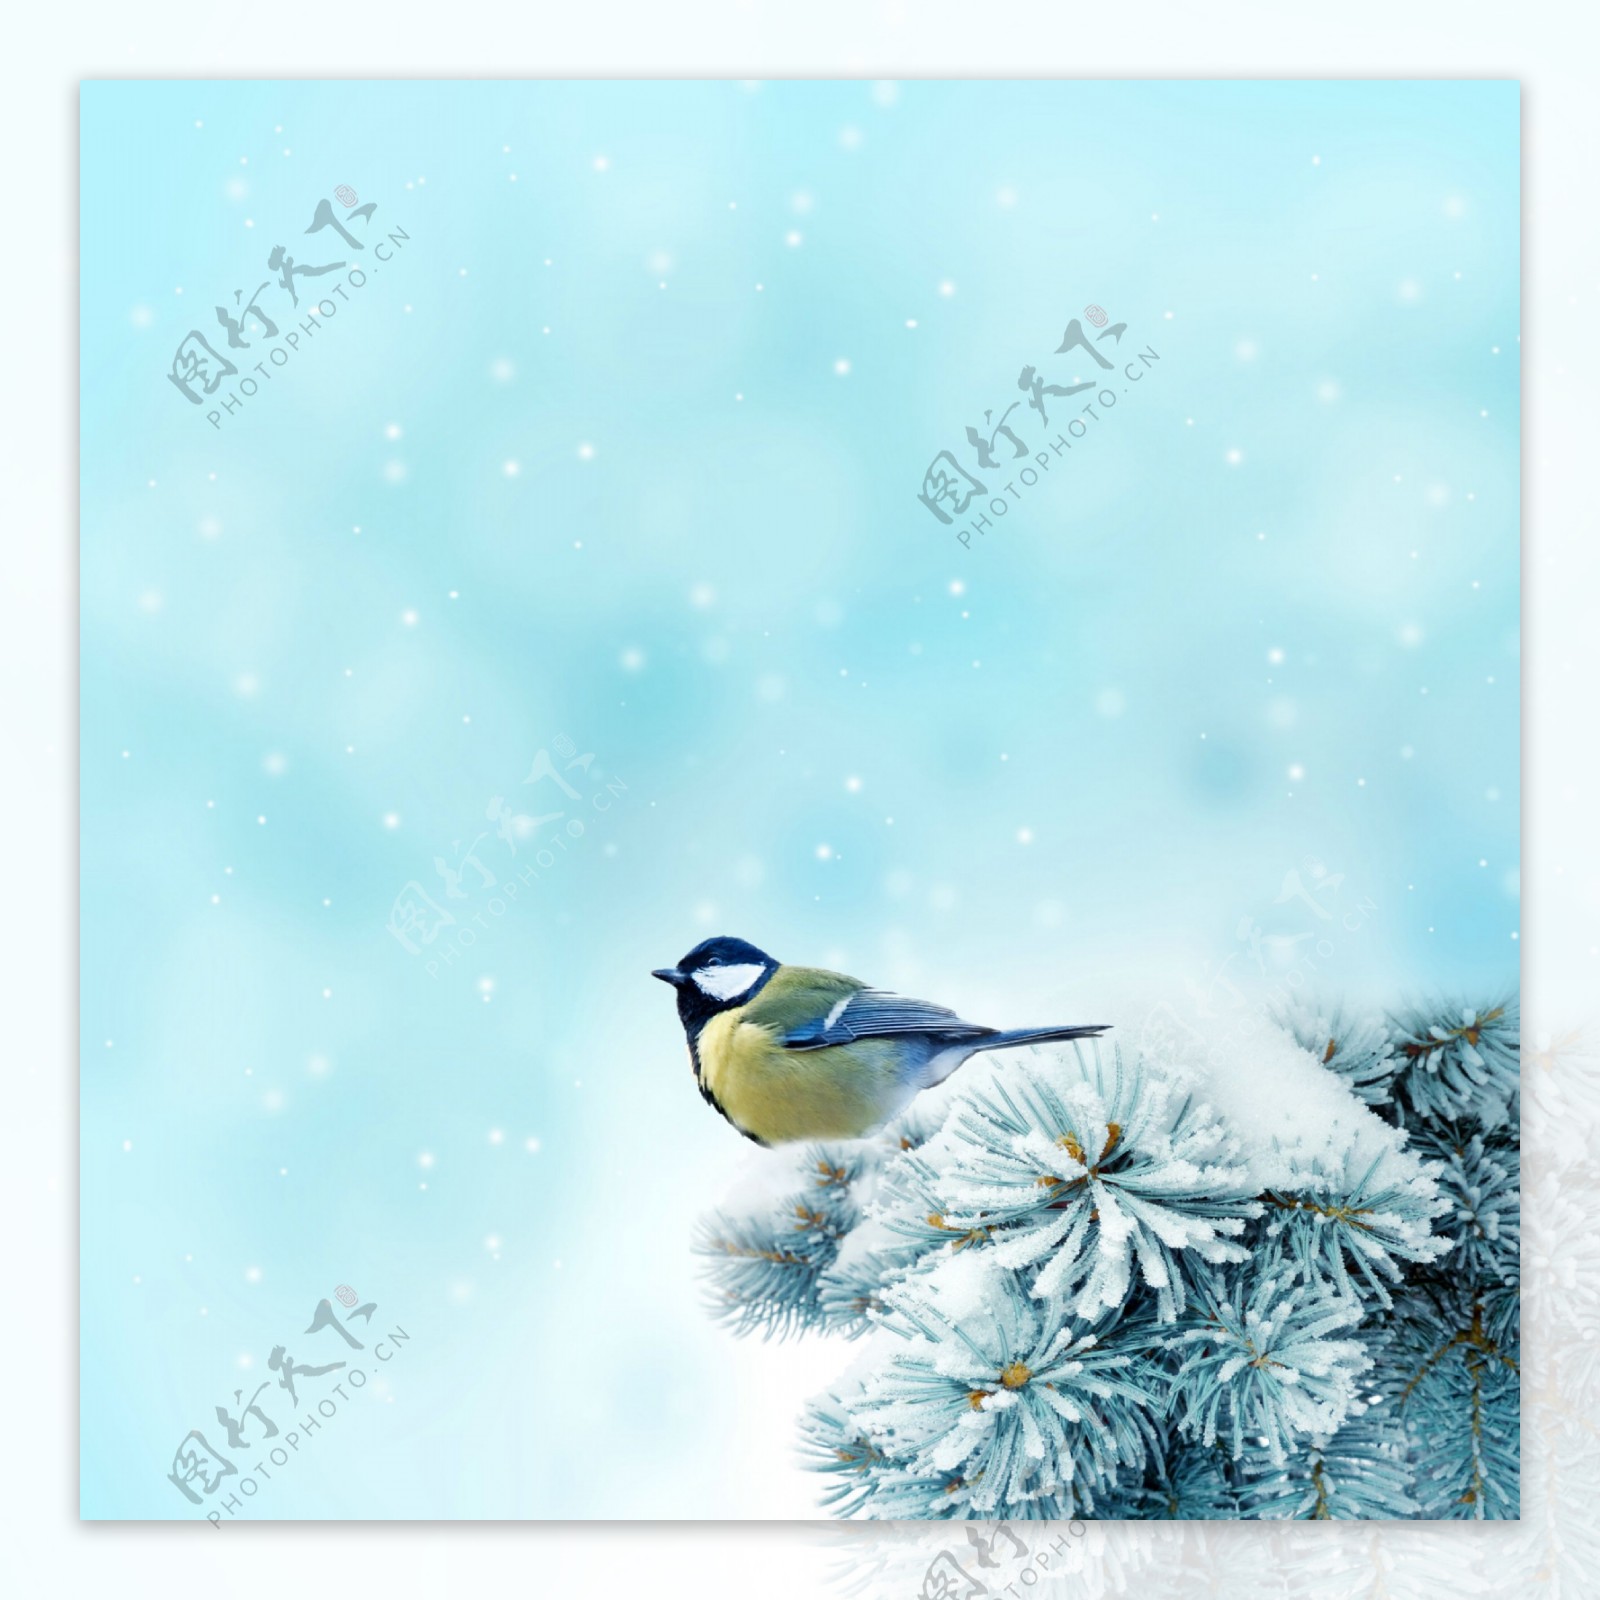 冬季雪景图片松枝上的黄鹂冬季雪景高清图片素材